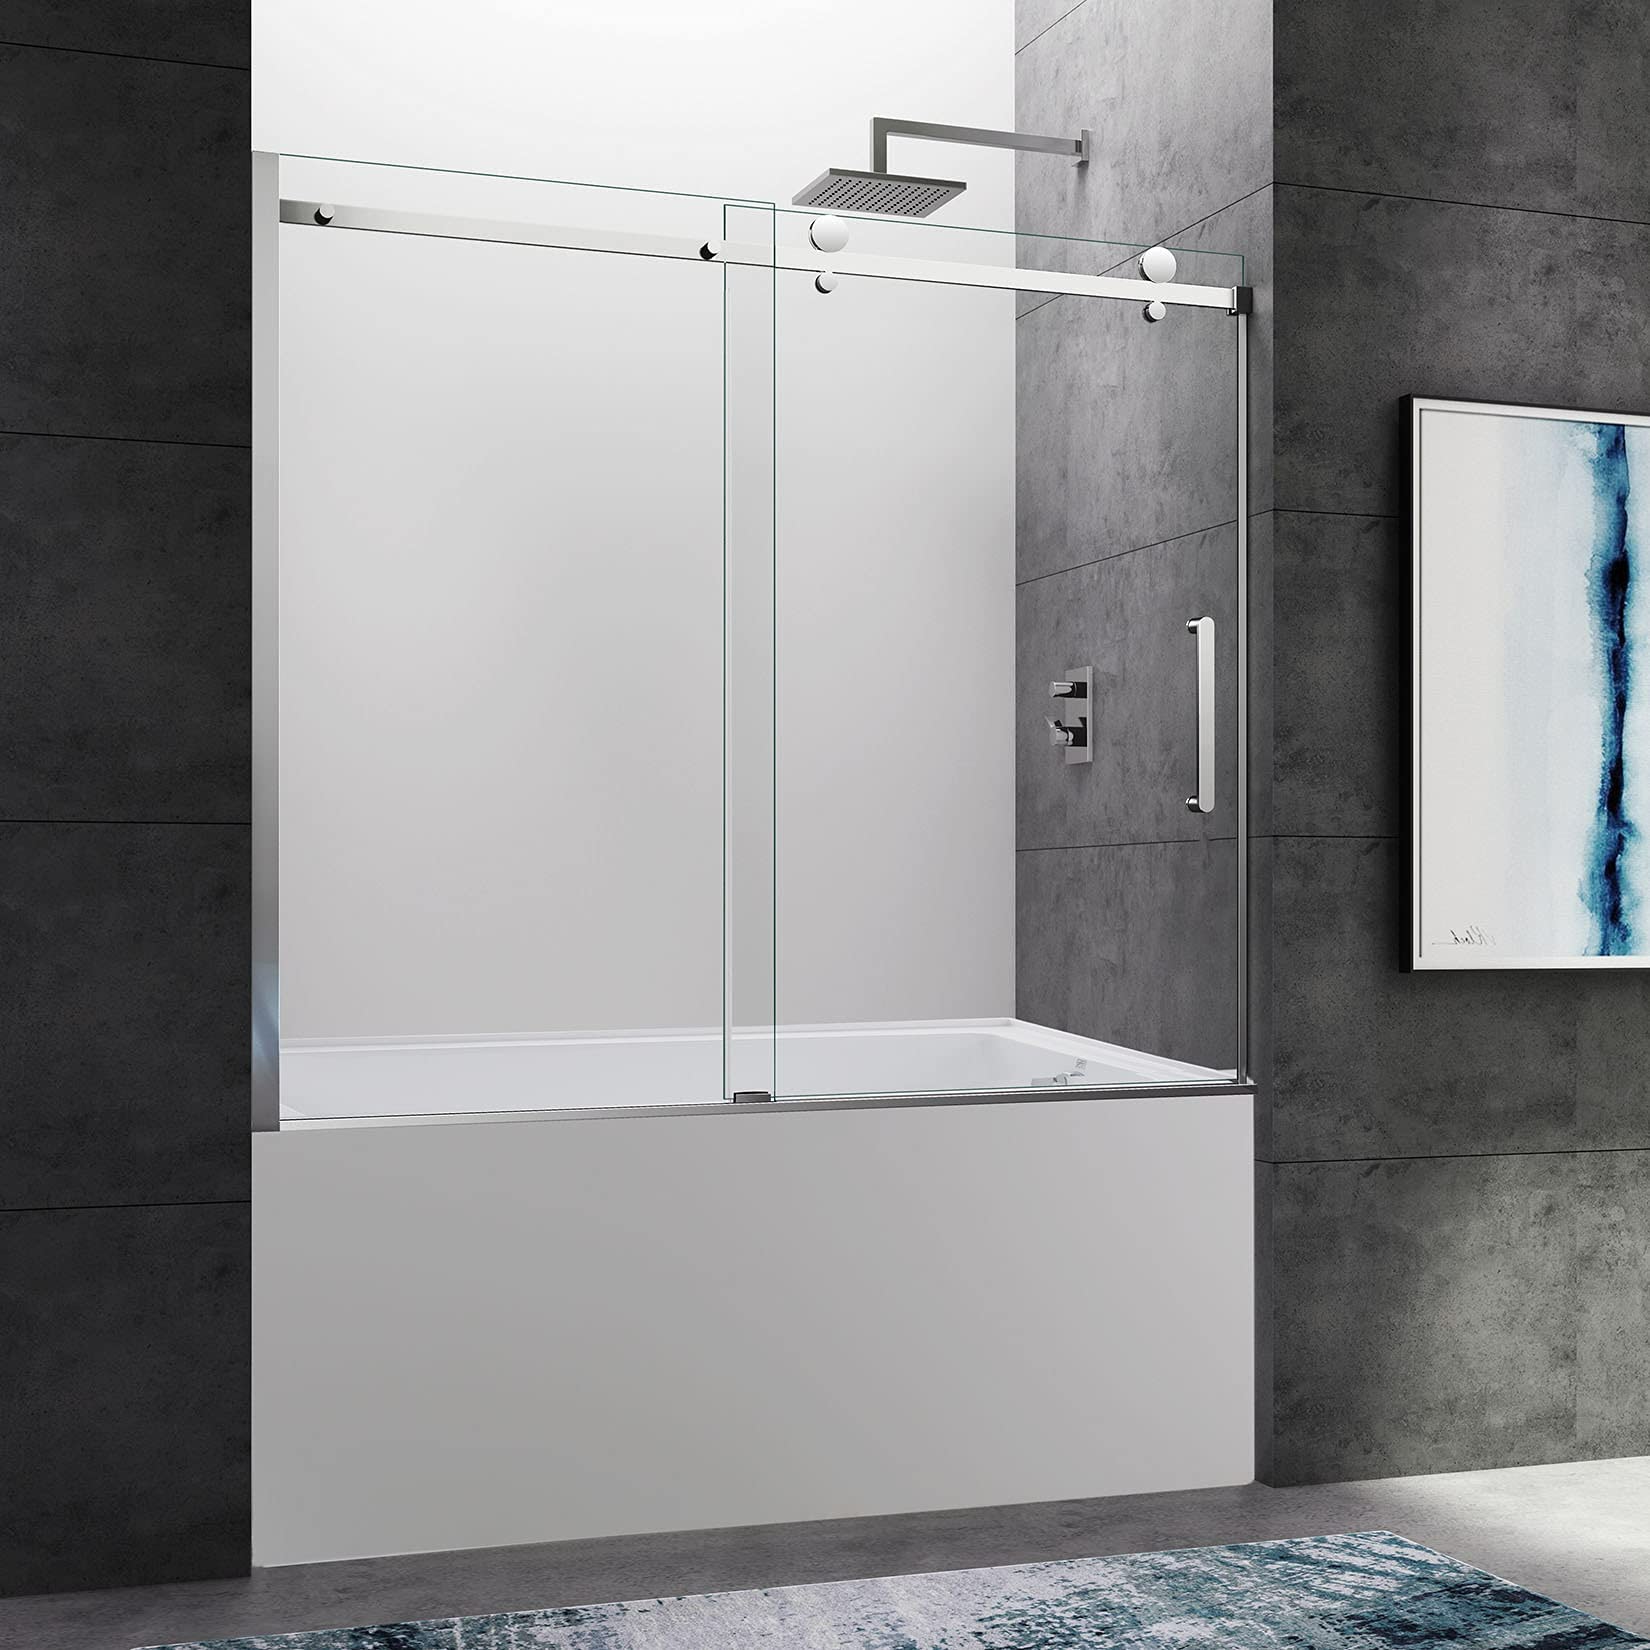 CKB Tampa Single Sliding Frameless Bathtub Shower Doors